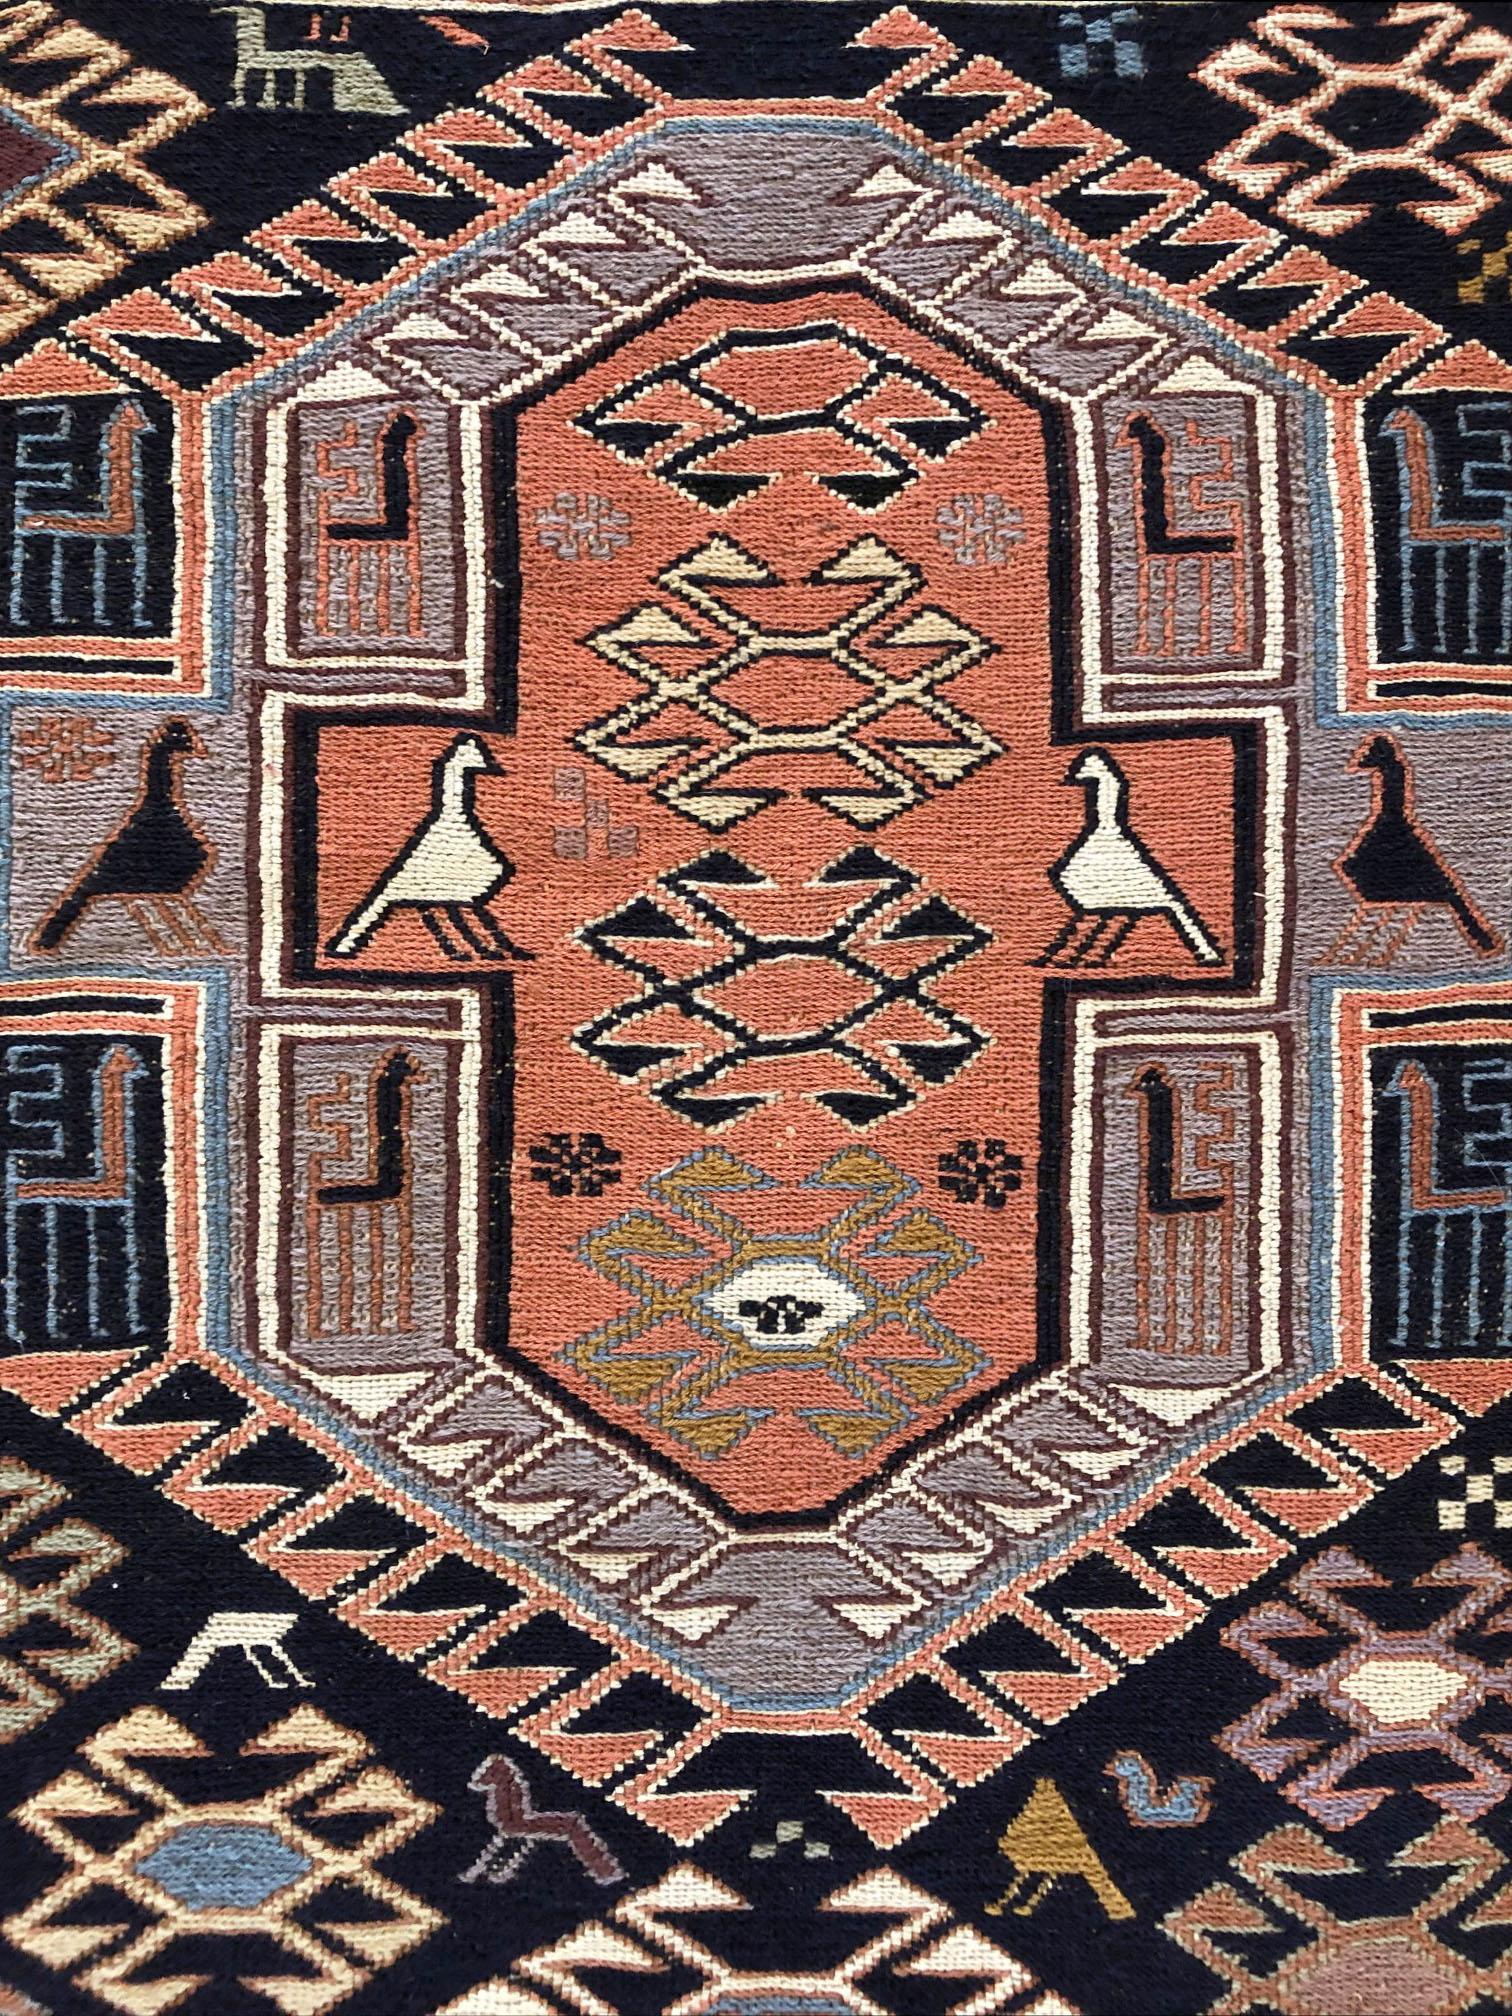 Wool Persian Sumak Multi-Color Tribal Kilim